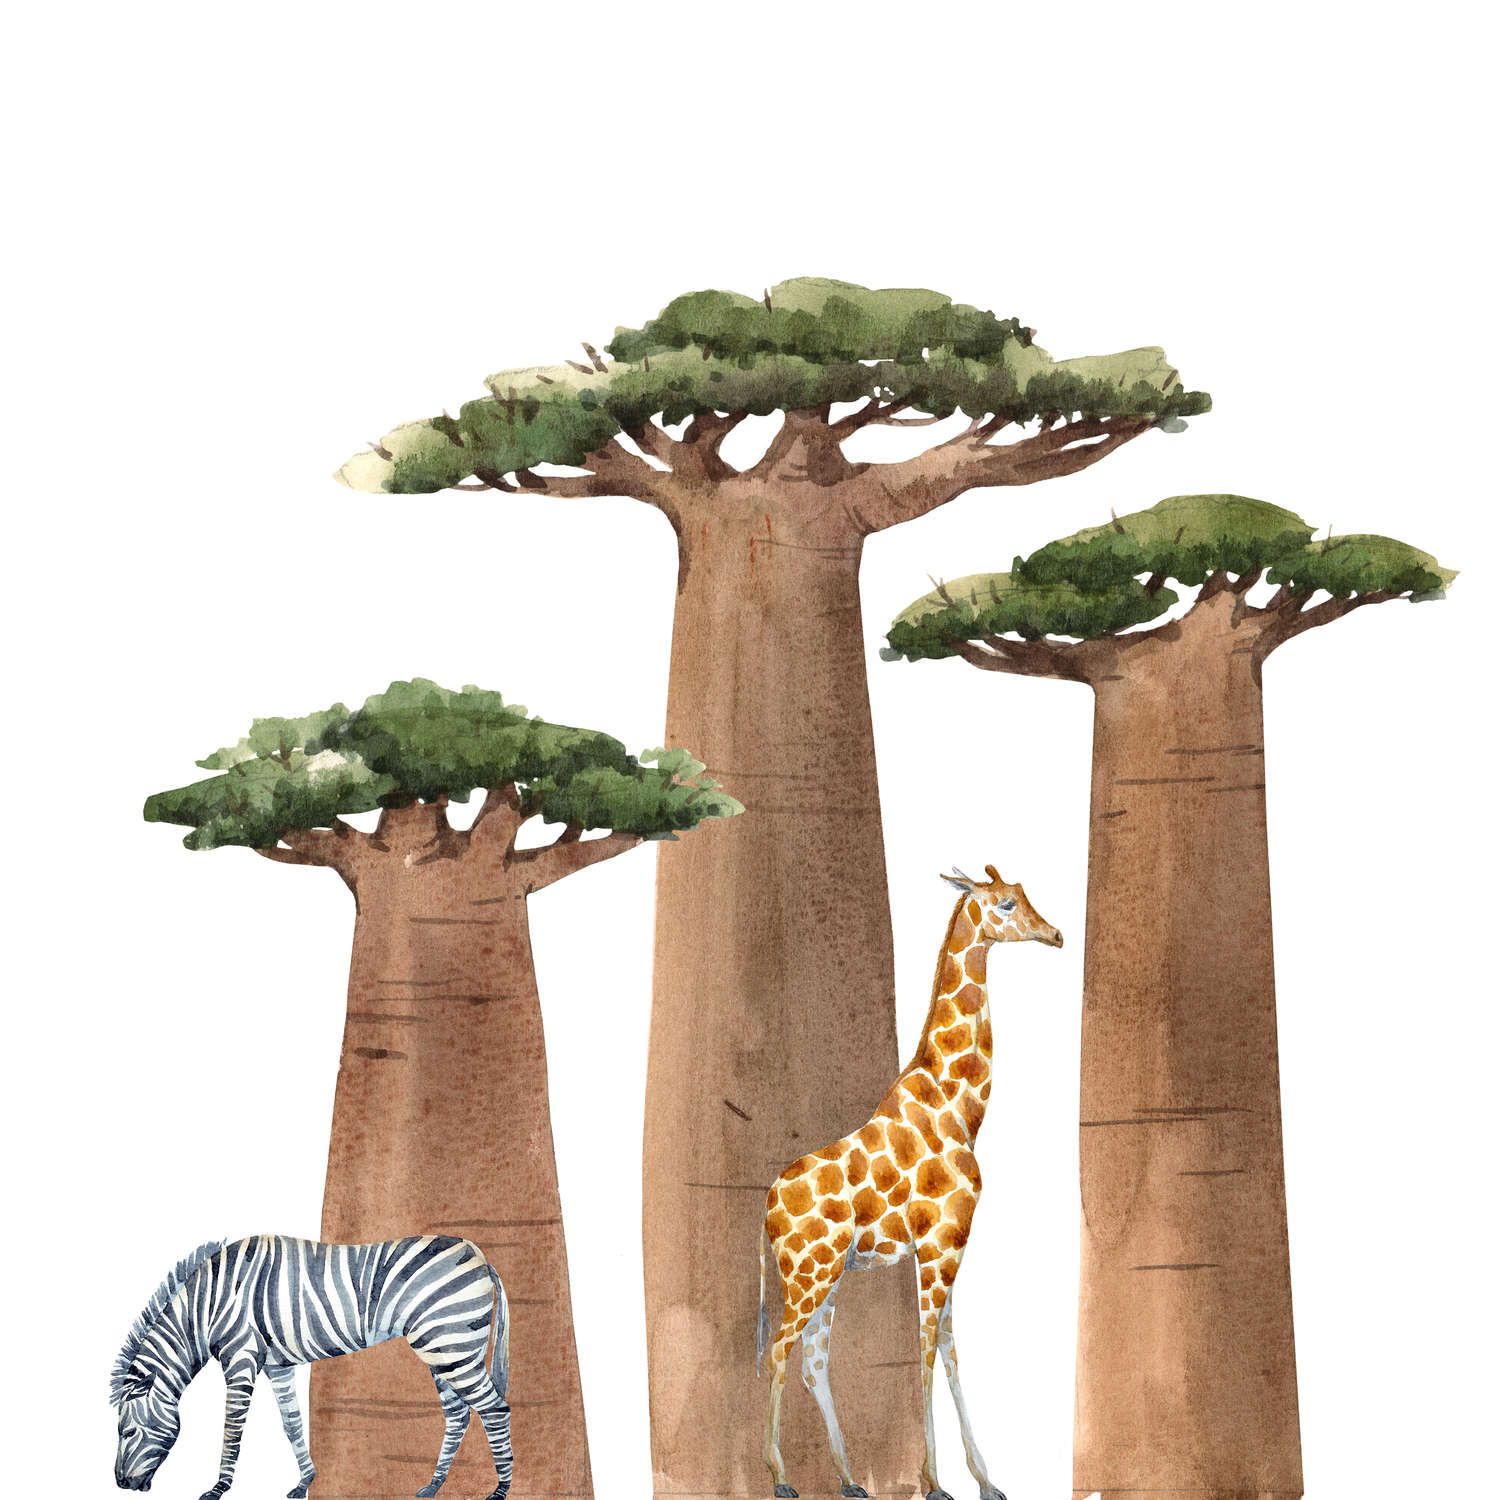             Digital behang Savannah met Giraffe en Zebra - Glad & parelmoervlies
        